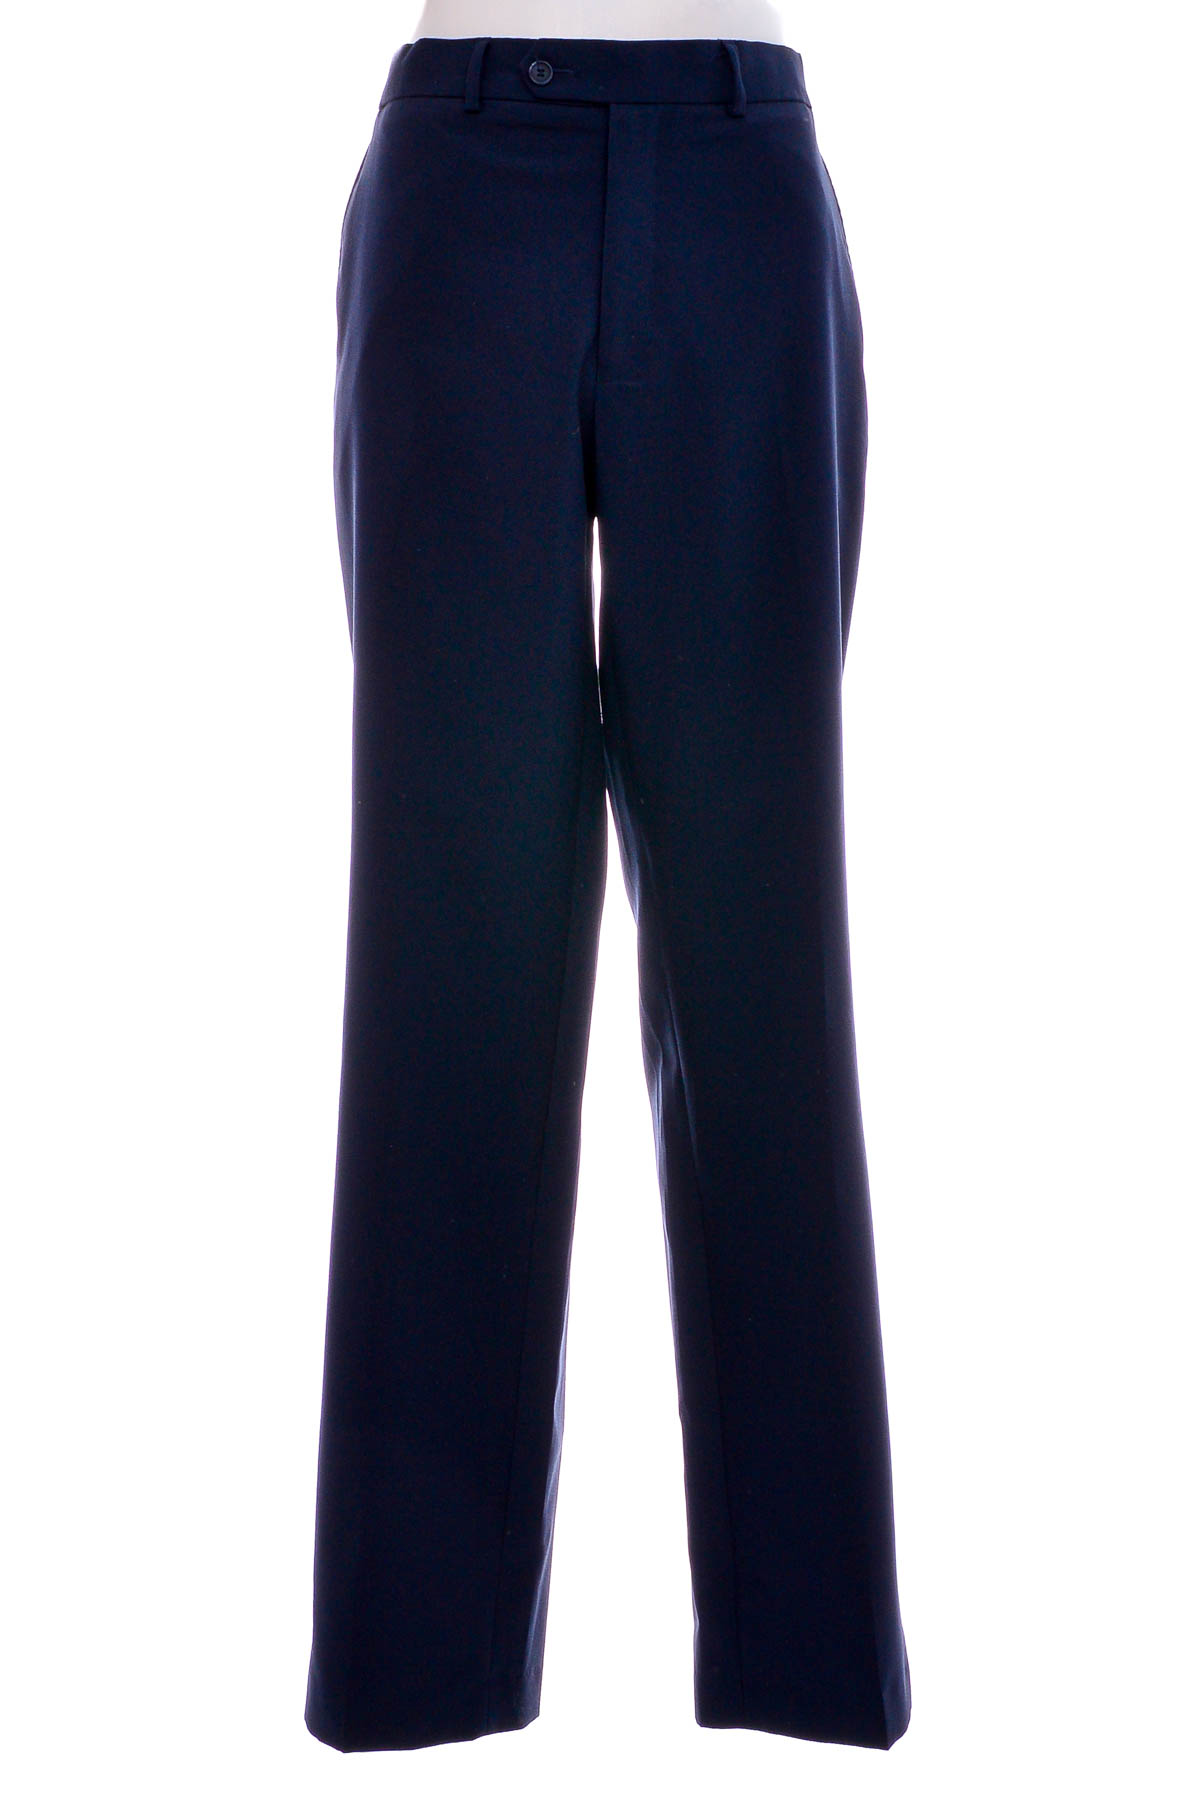 Ανδρικά παντελόνια - Bpc Selection Bonprix Collection - 0